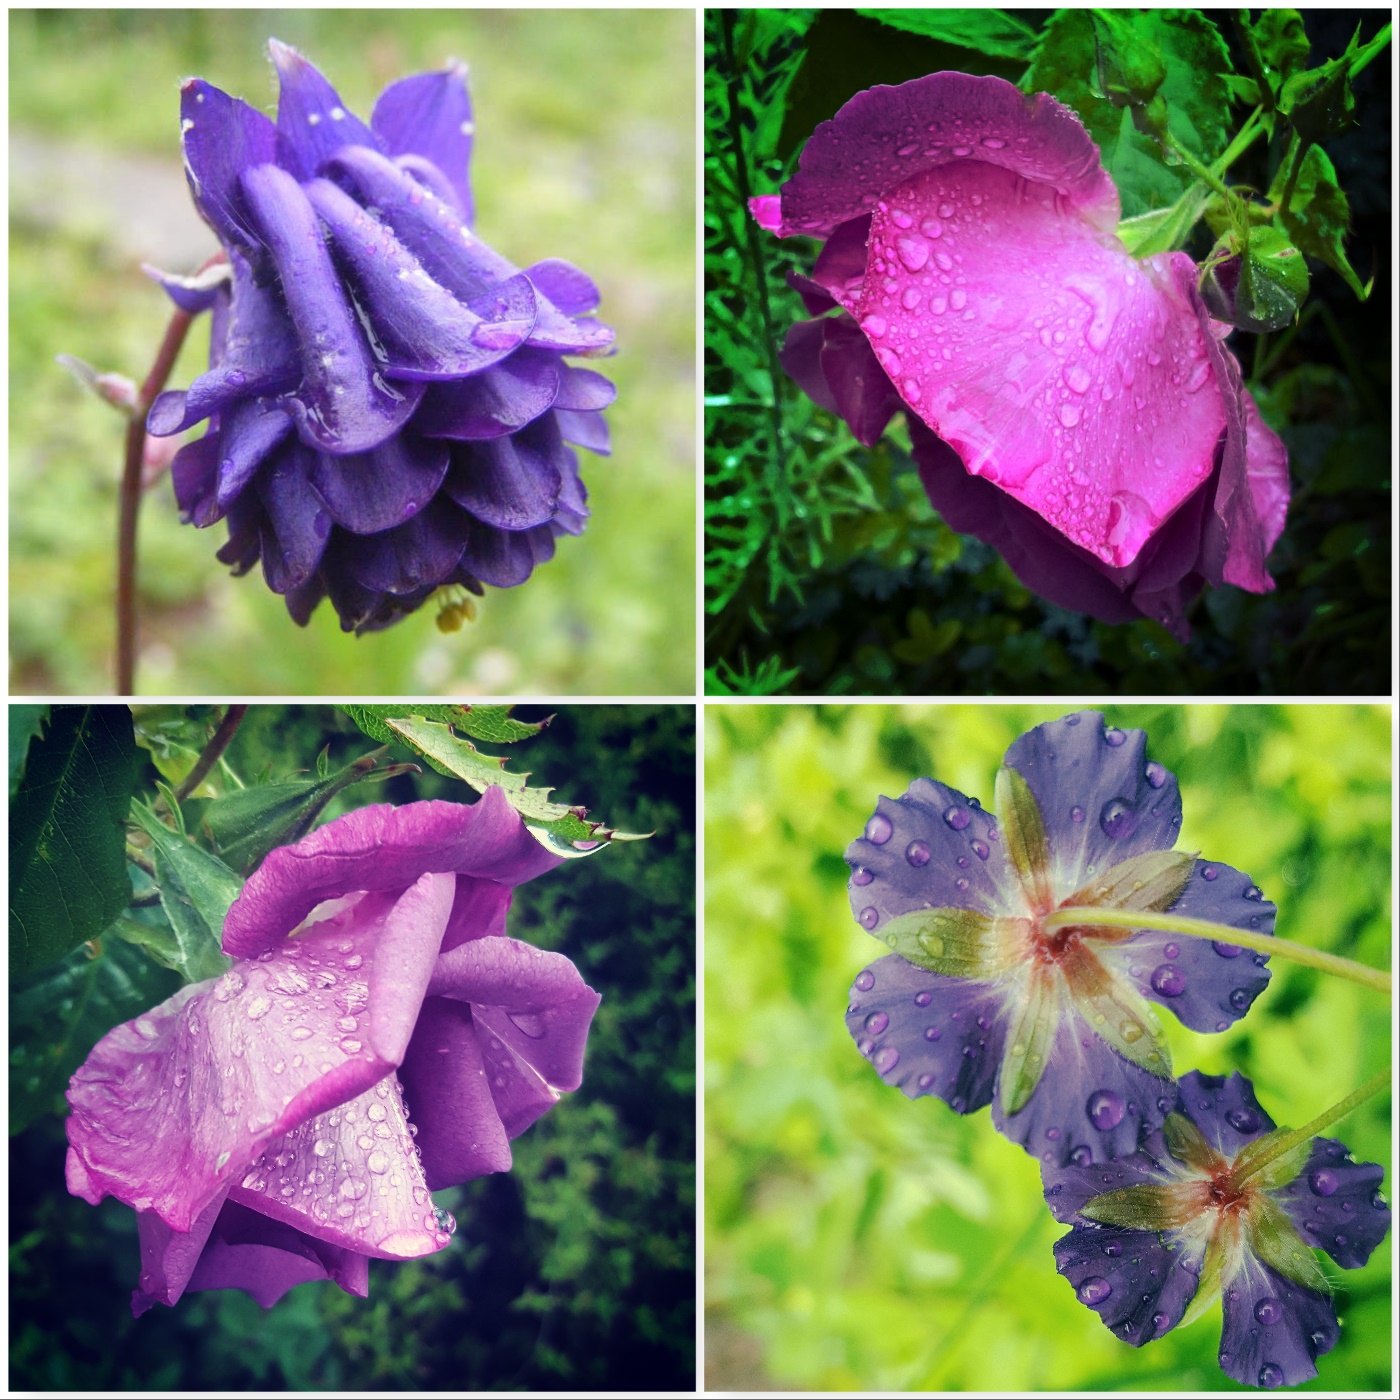 aquilegia-rhapsody-in-blue-rose-geranium-the-last-krystallos